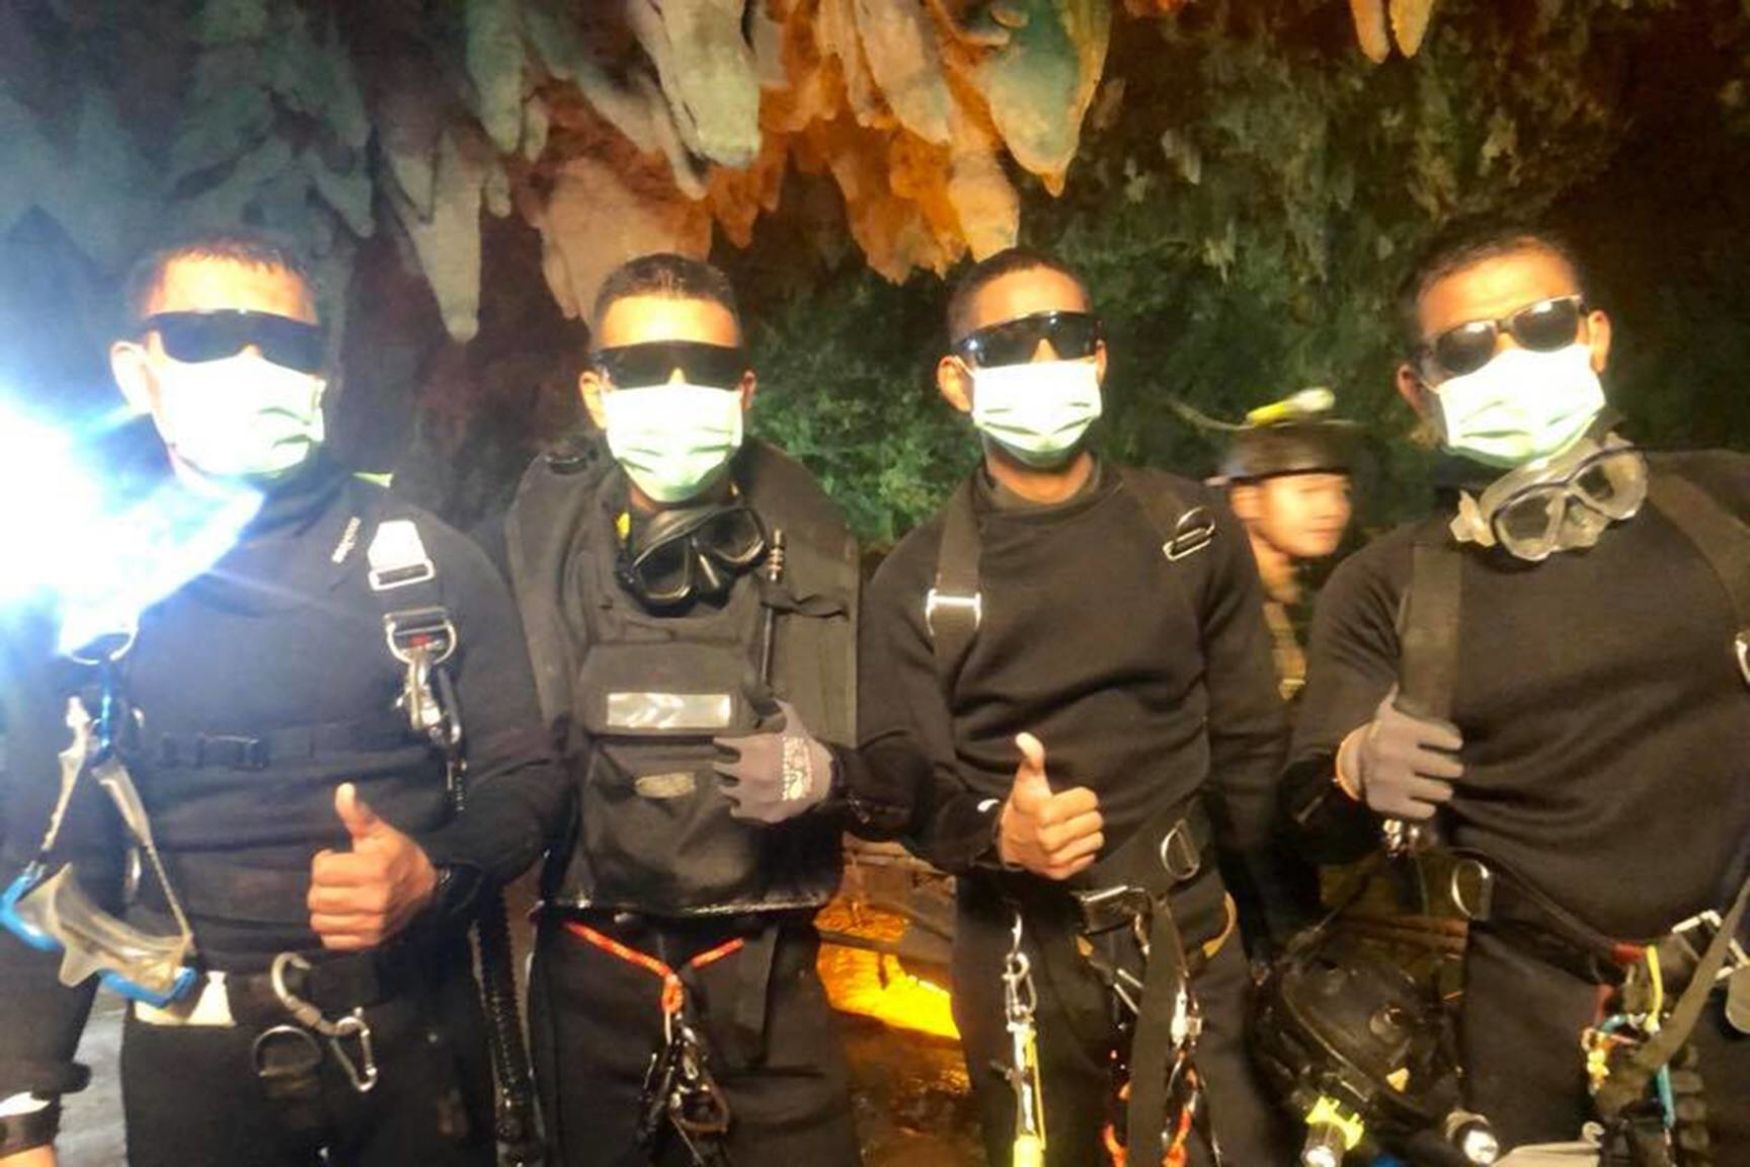 Thajští potápěči, kteří zachránili chlapce z jeskyně